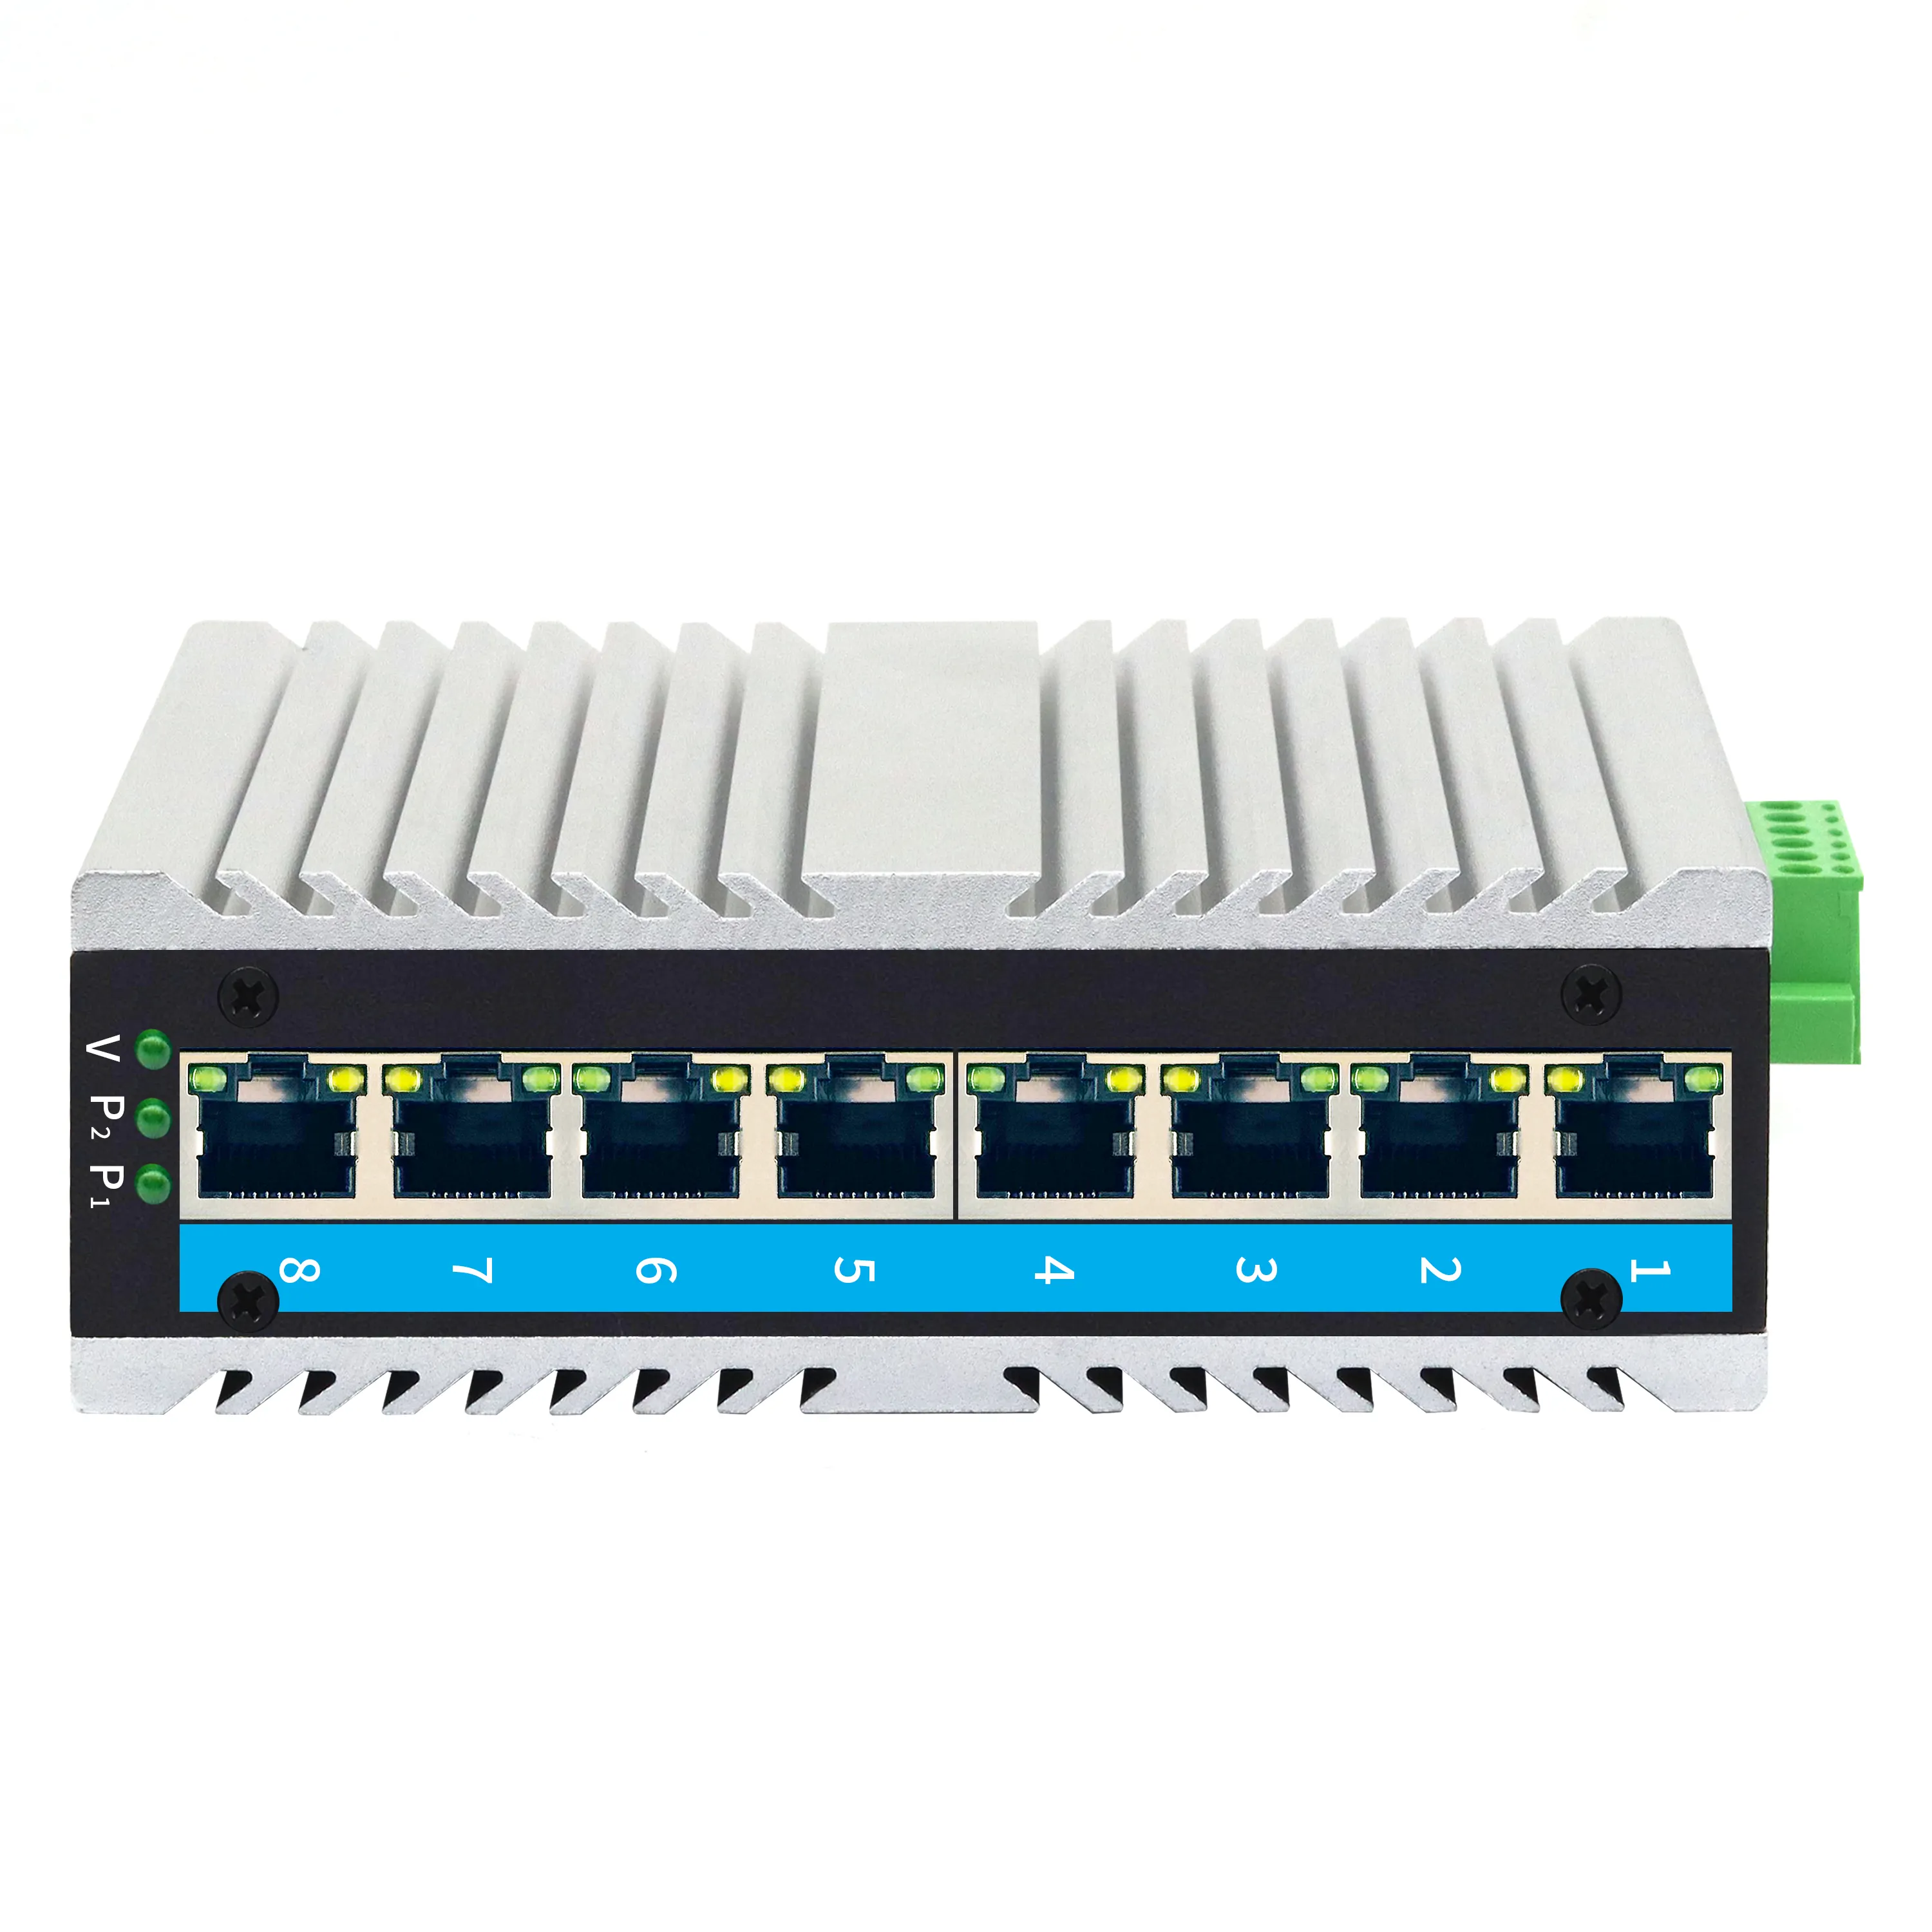 Interruttori Ethernet gigabit industriale a tecnologia a bassa potenza con attacco DIN a 8 porte per sistemi di trasporto